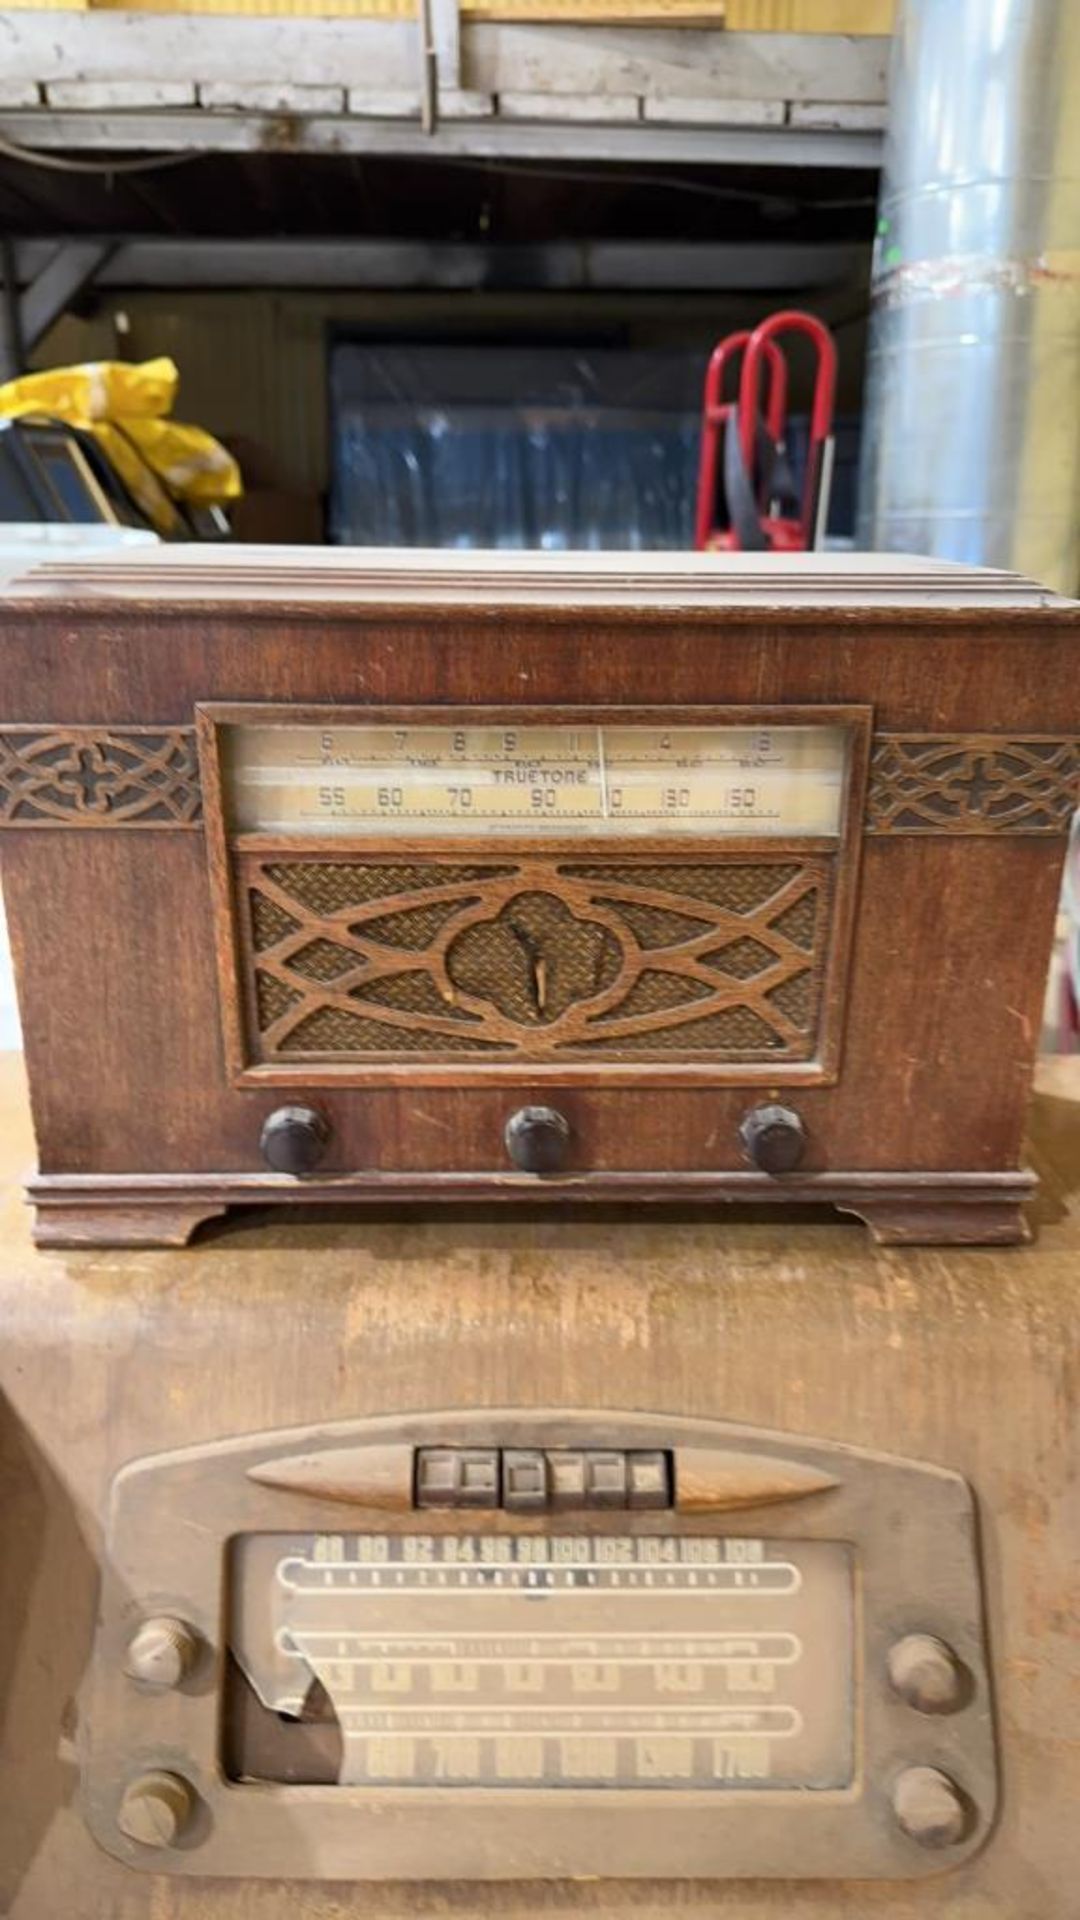 2 Antique Radios - Image 2 of 3